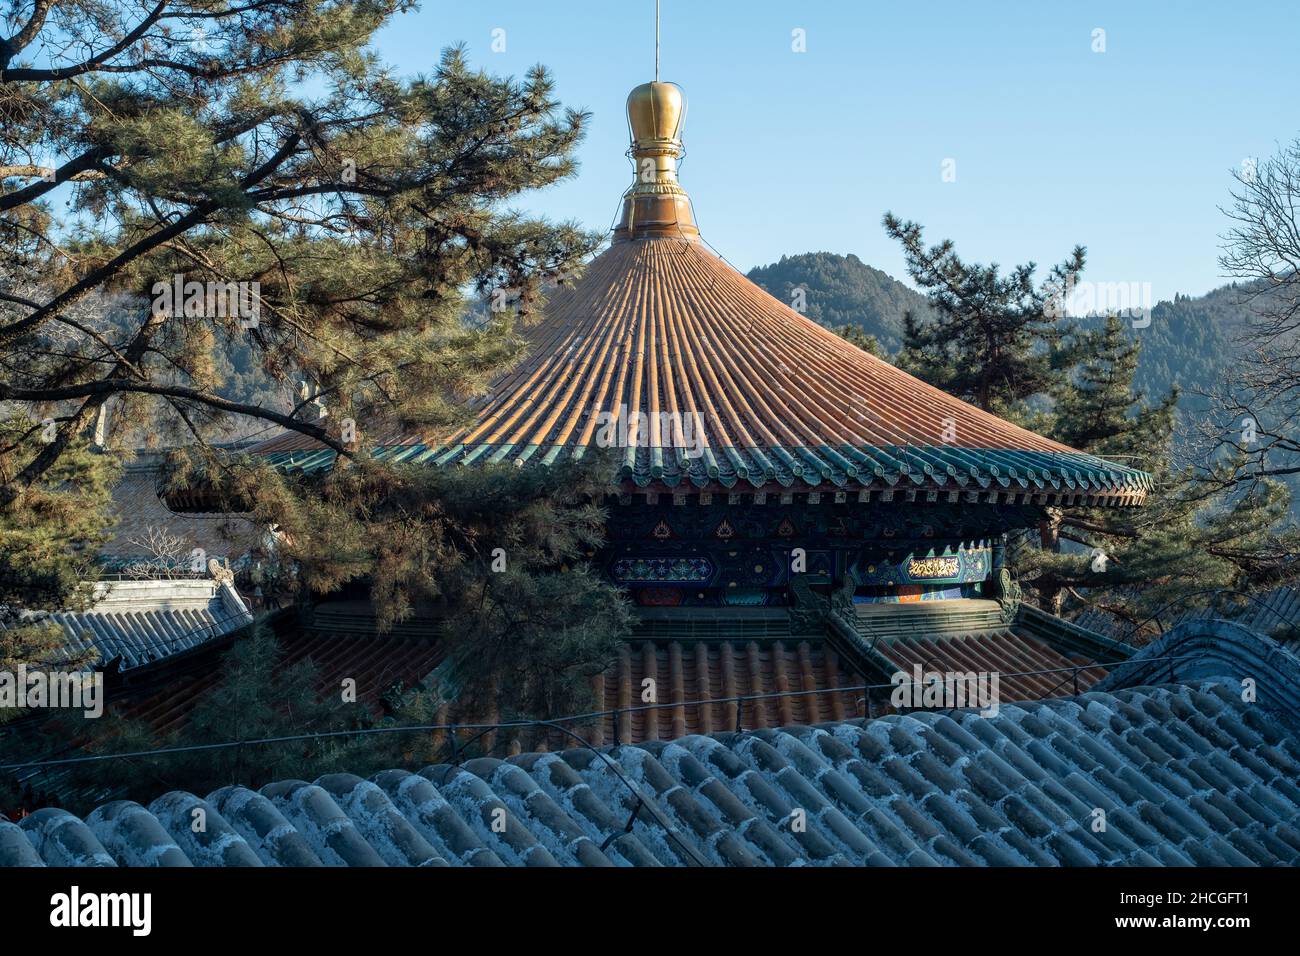 Lengyan Altar en el Templo de Tanzhe. El Templo de Tanzhe es un templo budista situado en las colinas occidentales, una zona montañosa en el oeste de Beijing, China. Foto de stock